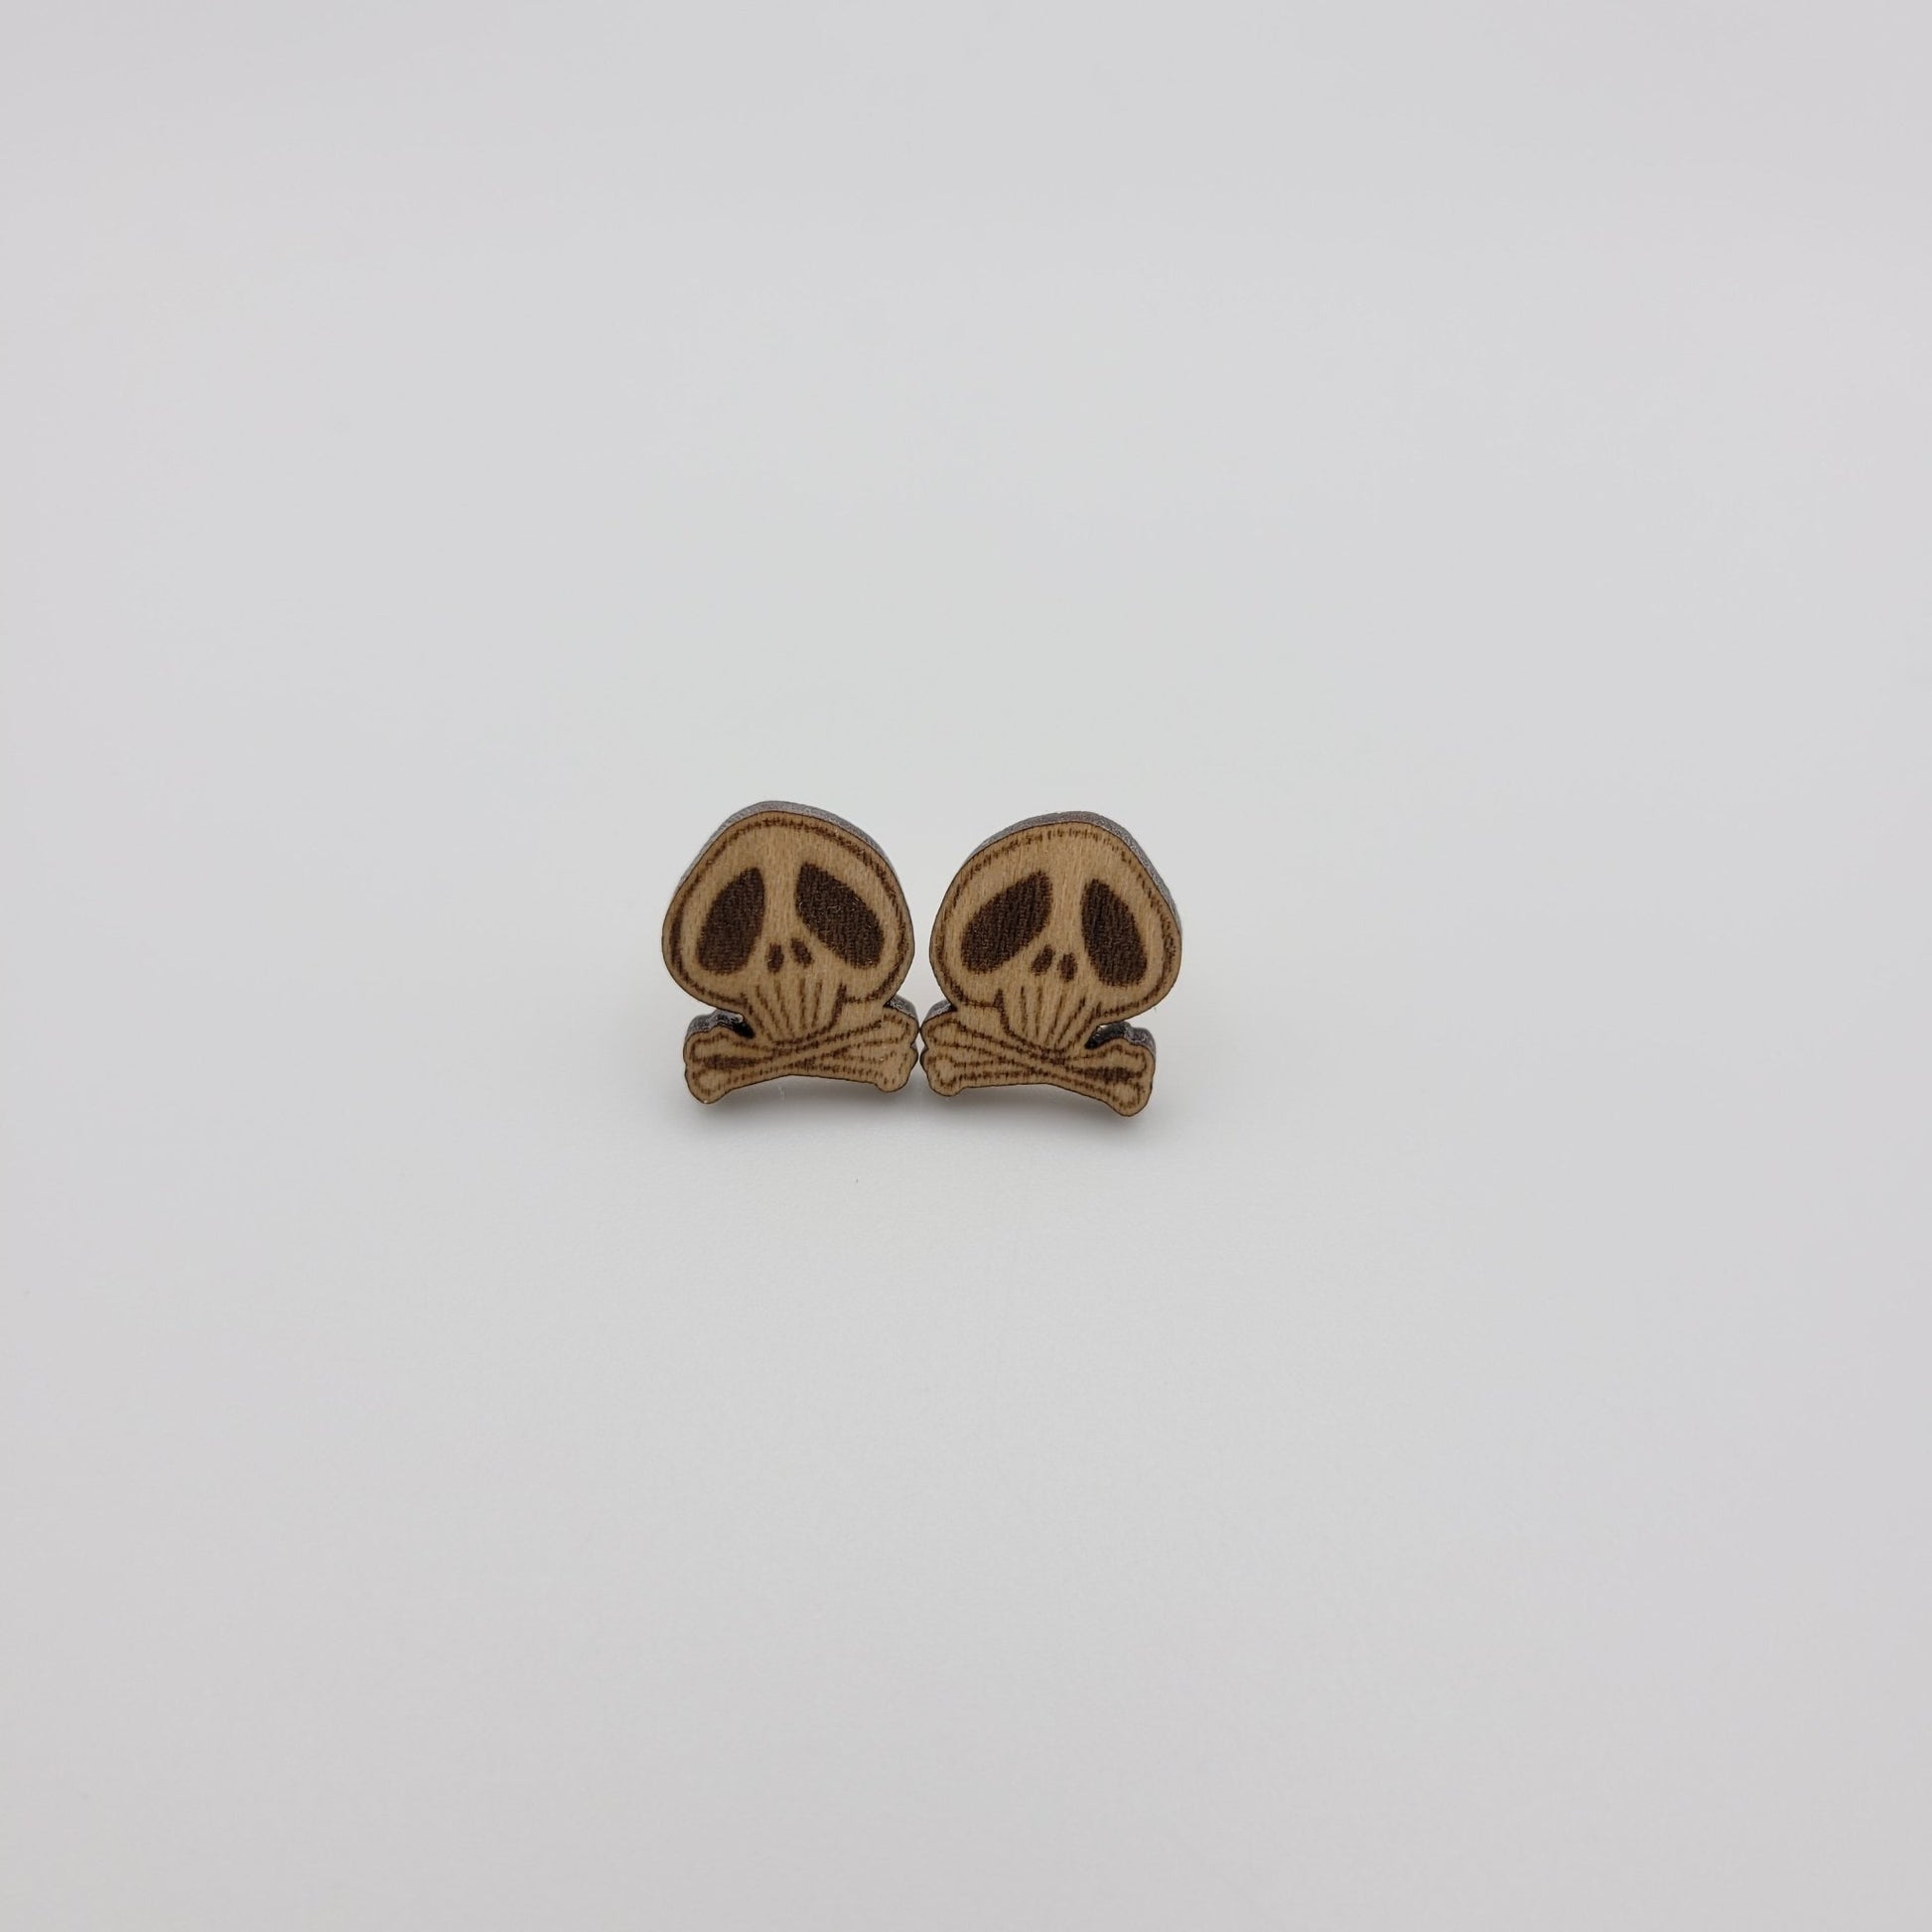 Skull and Crossbones Stud Earrings - 4 Arrows Creations